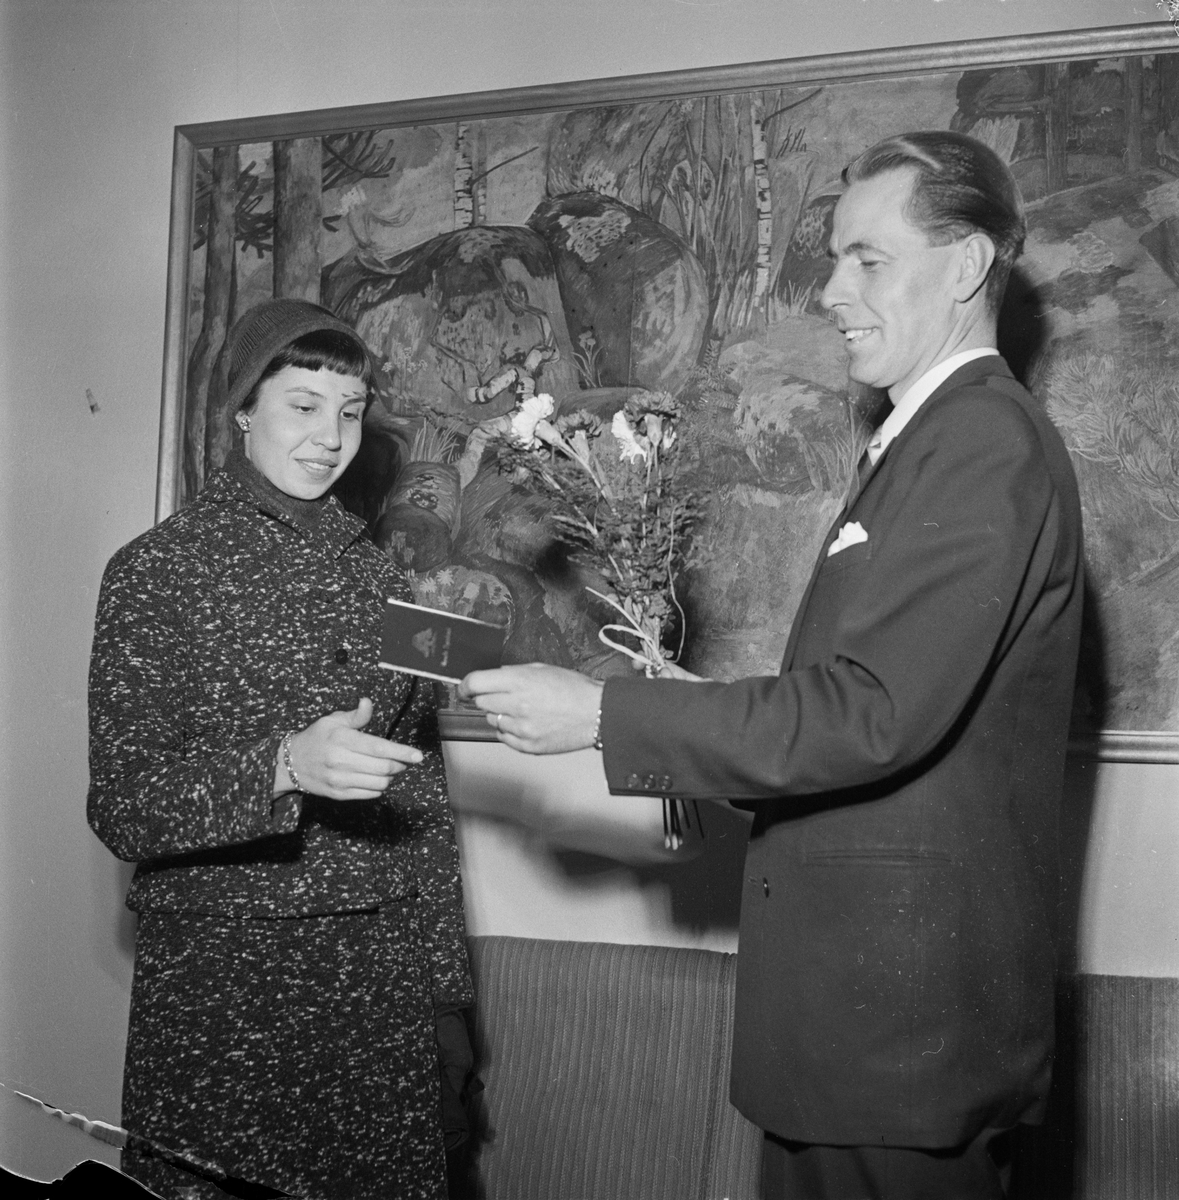 Sparbanken, "Gyllene gripen", Uppsala, oktober 1954